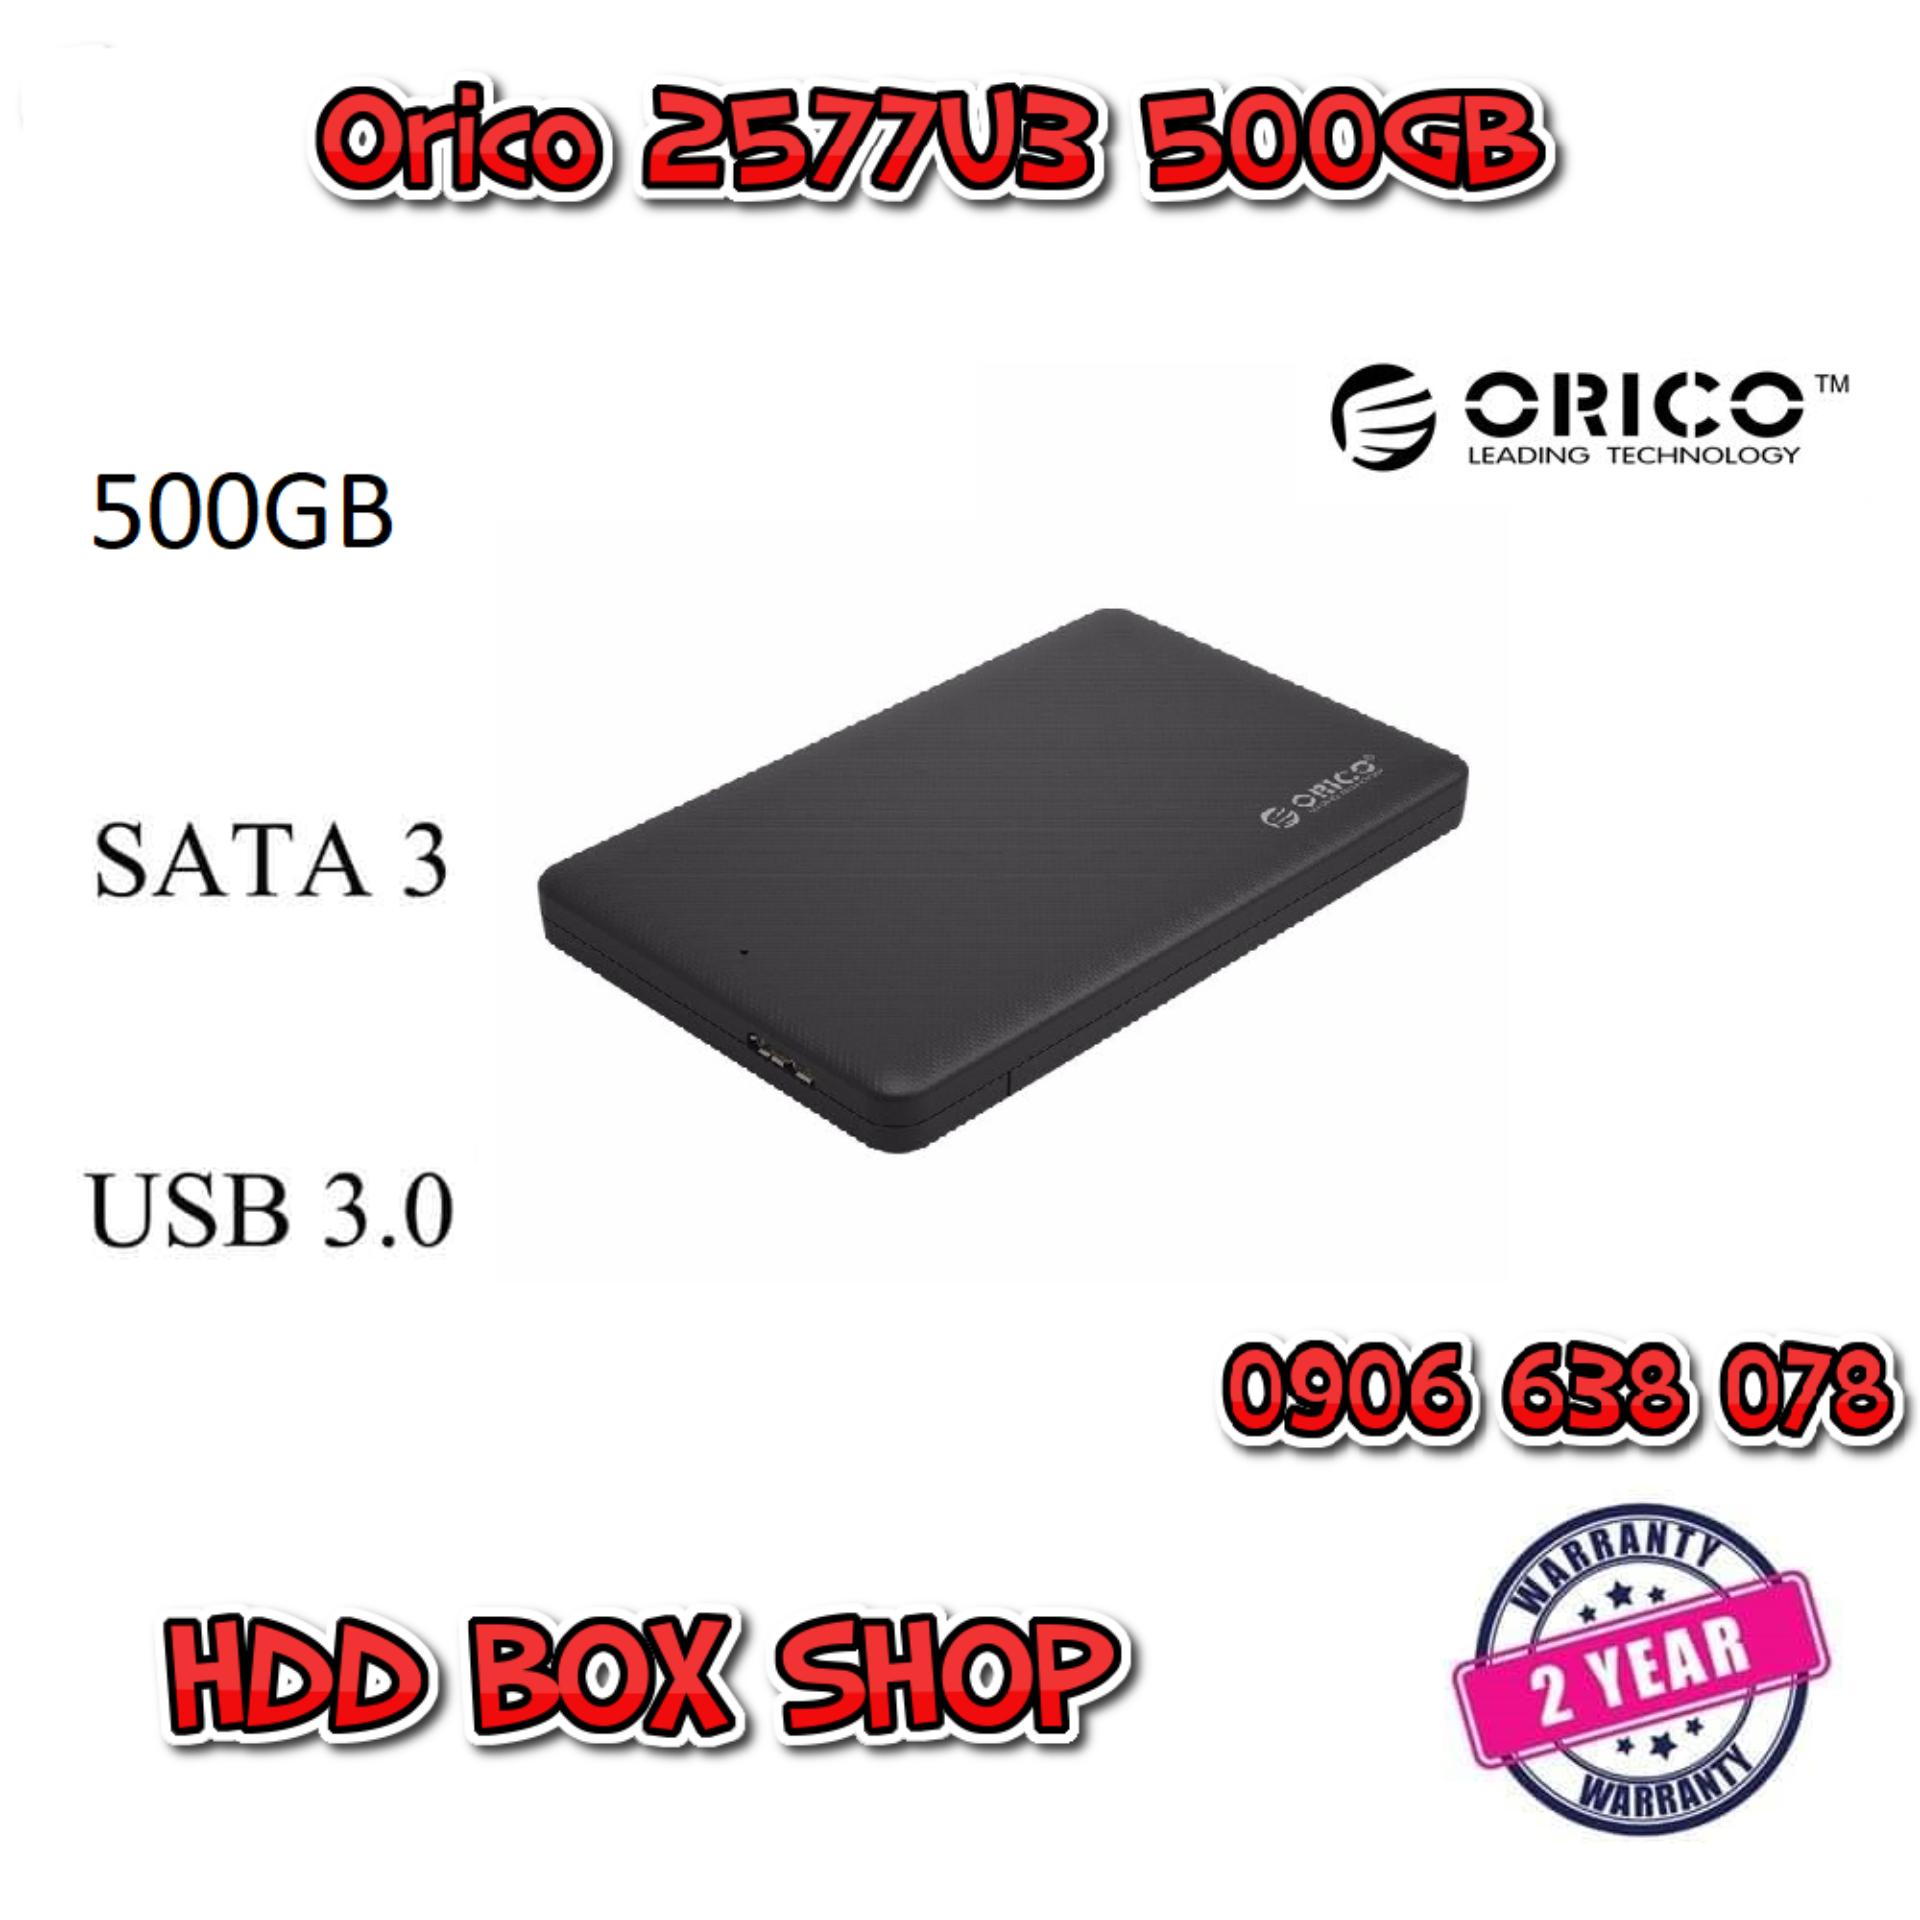 Ổ CỨNG DI ĐỘNG ORICO 2577U3 500GB - Bảo Hành 24 tháng 1 đổi 1 - Tặng túi chống sốc